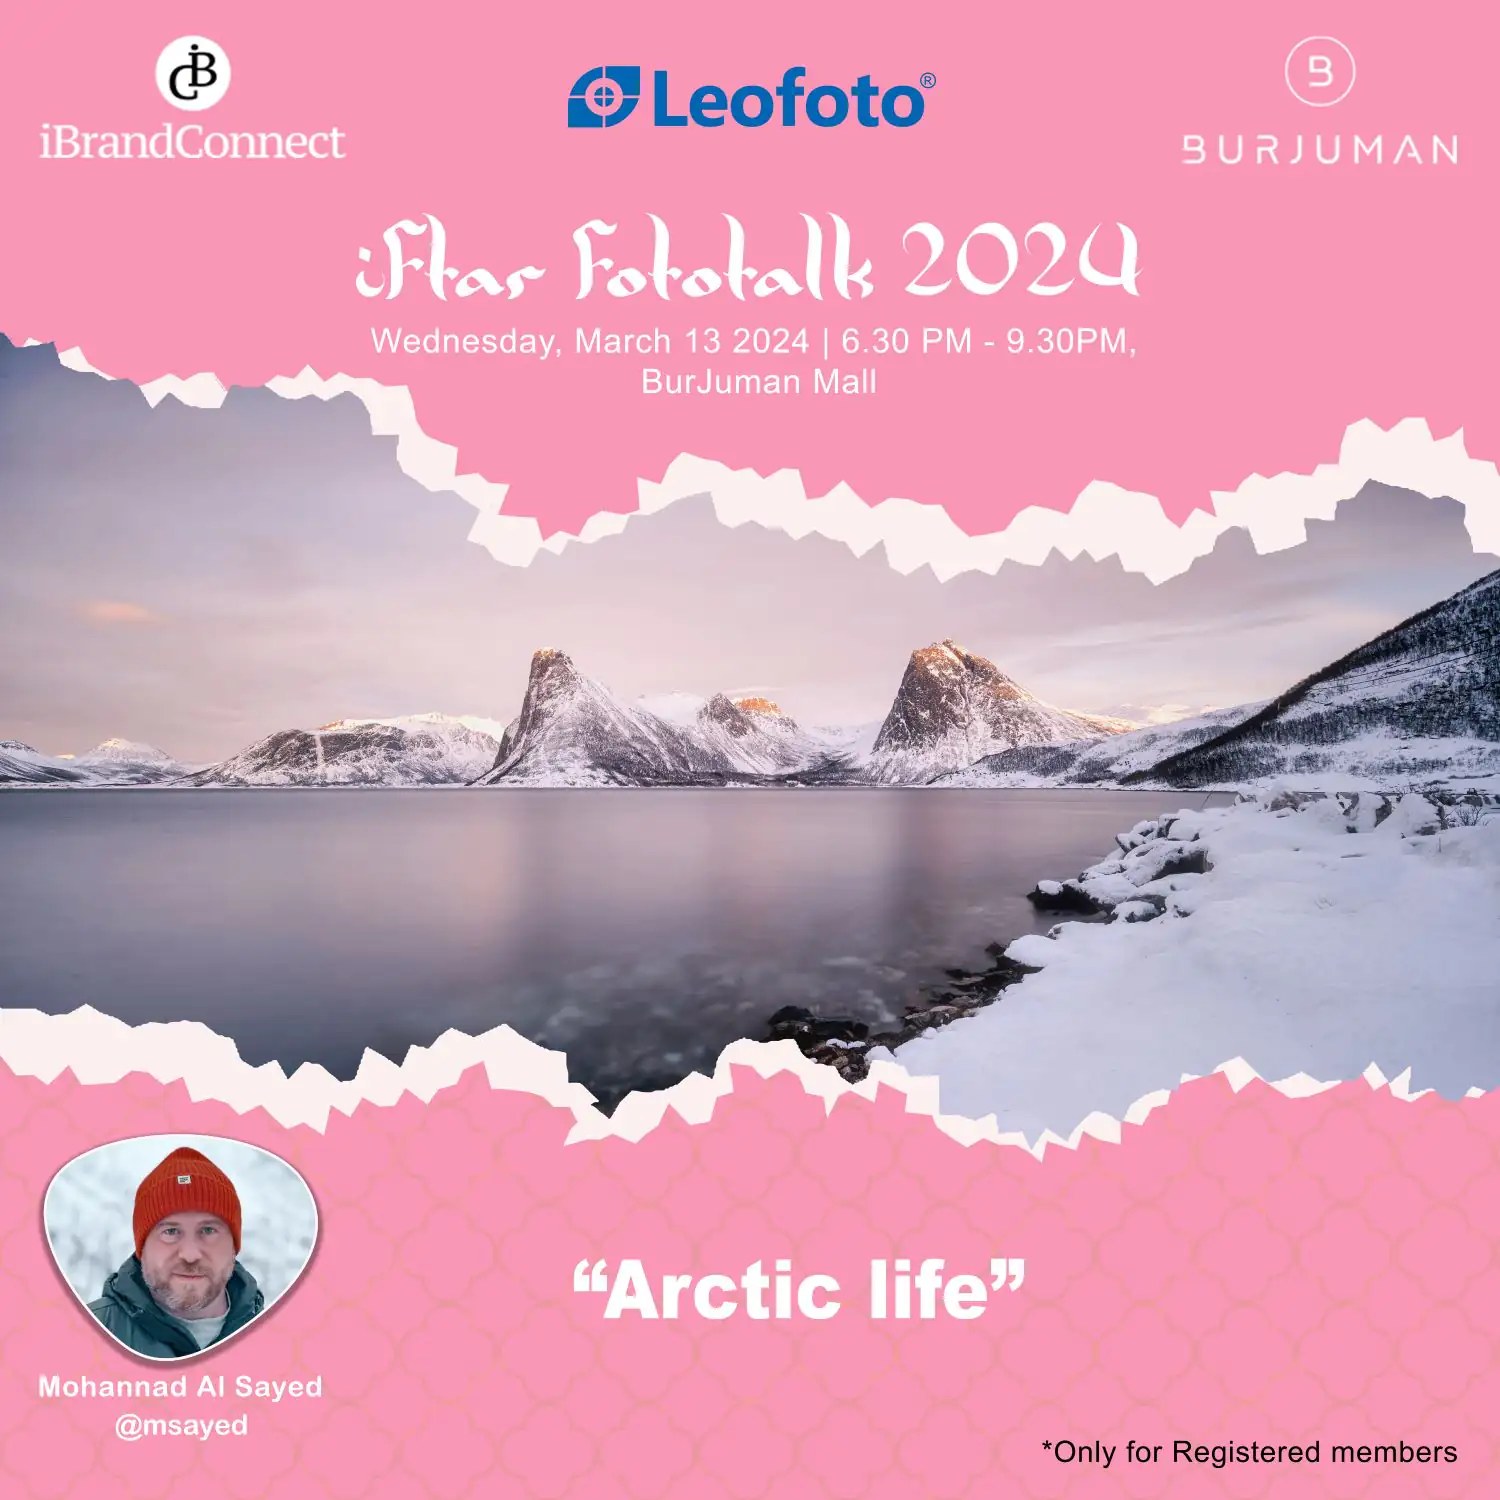 Arctic life - Iftar Fototalk 2024 